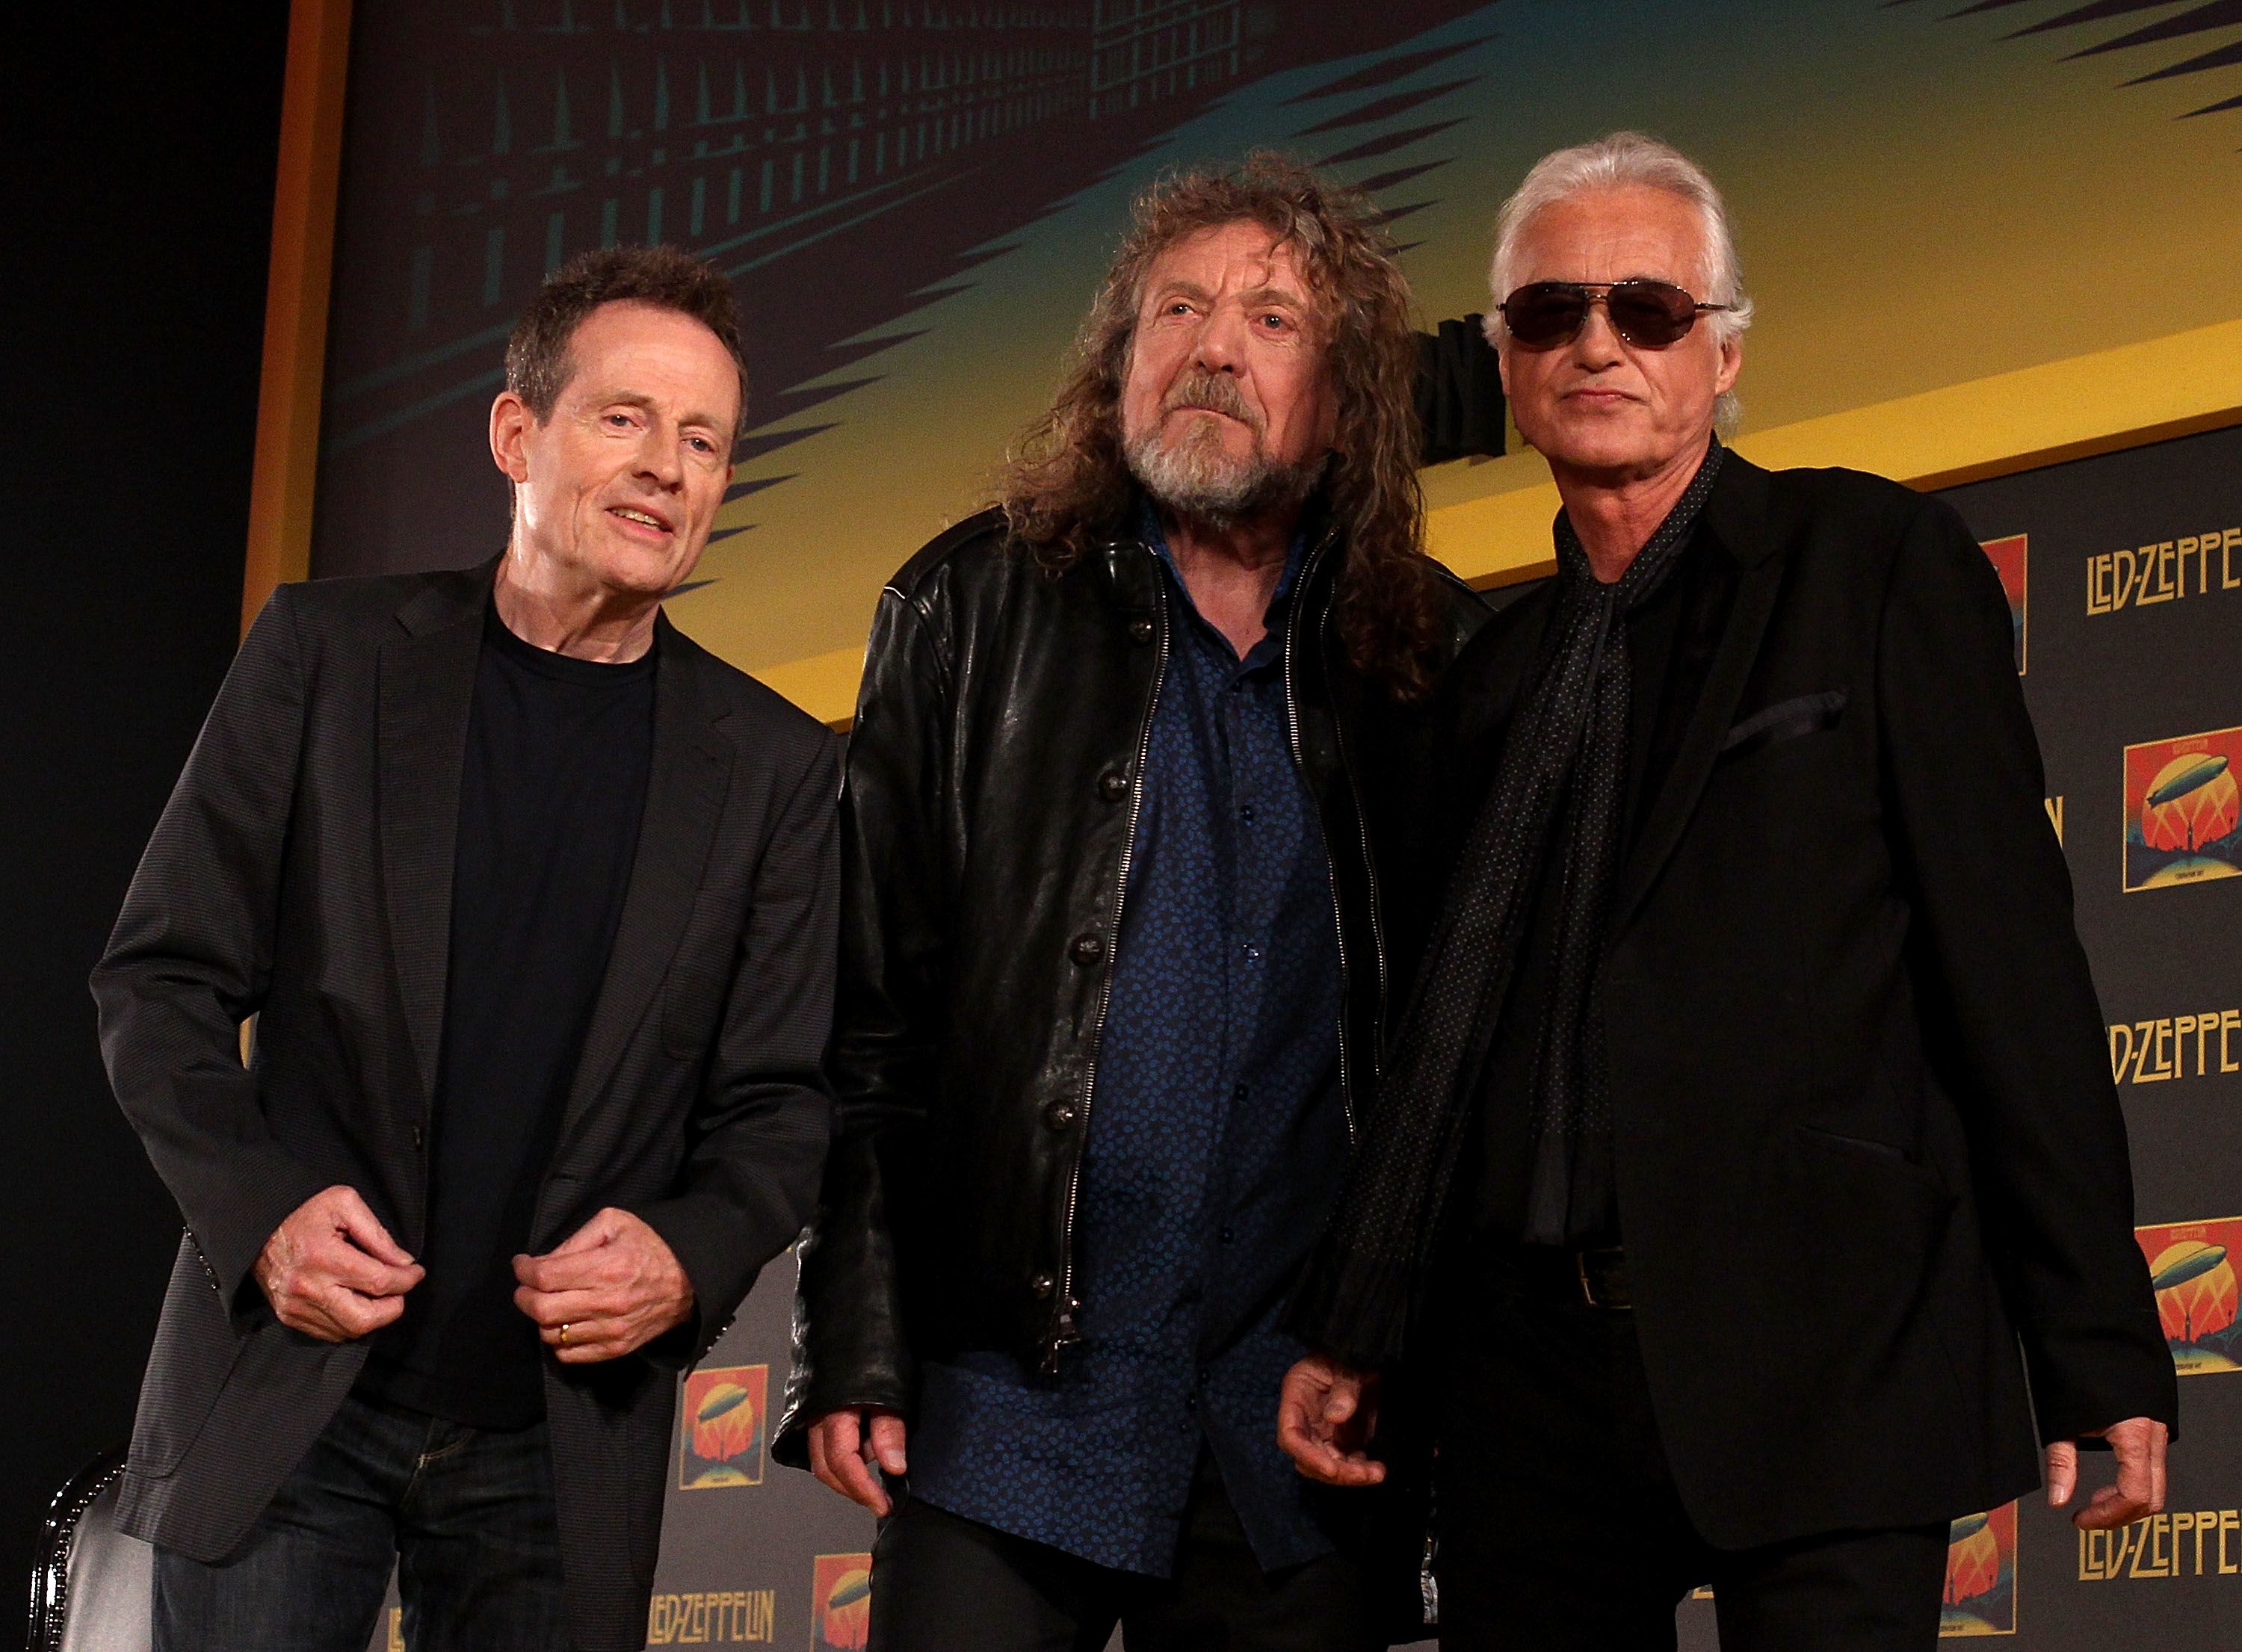 aritmetik jævnt medaljevinder Led Zeppelin wins major copyright battle | CNN